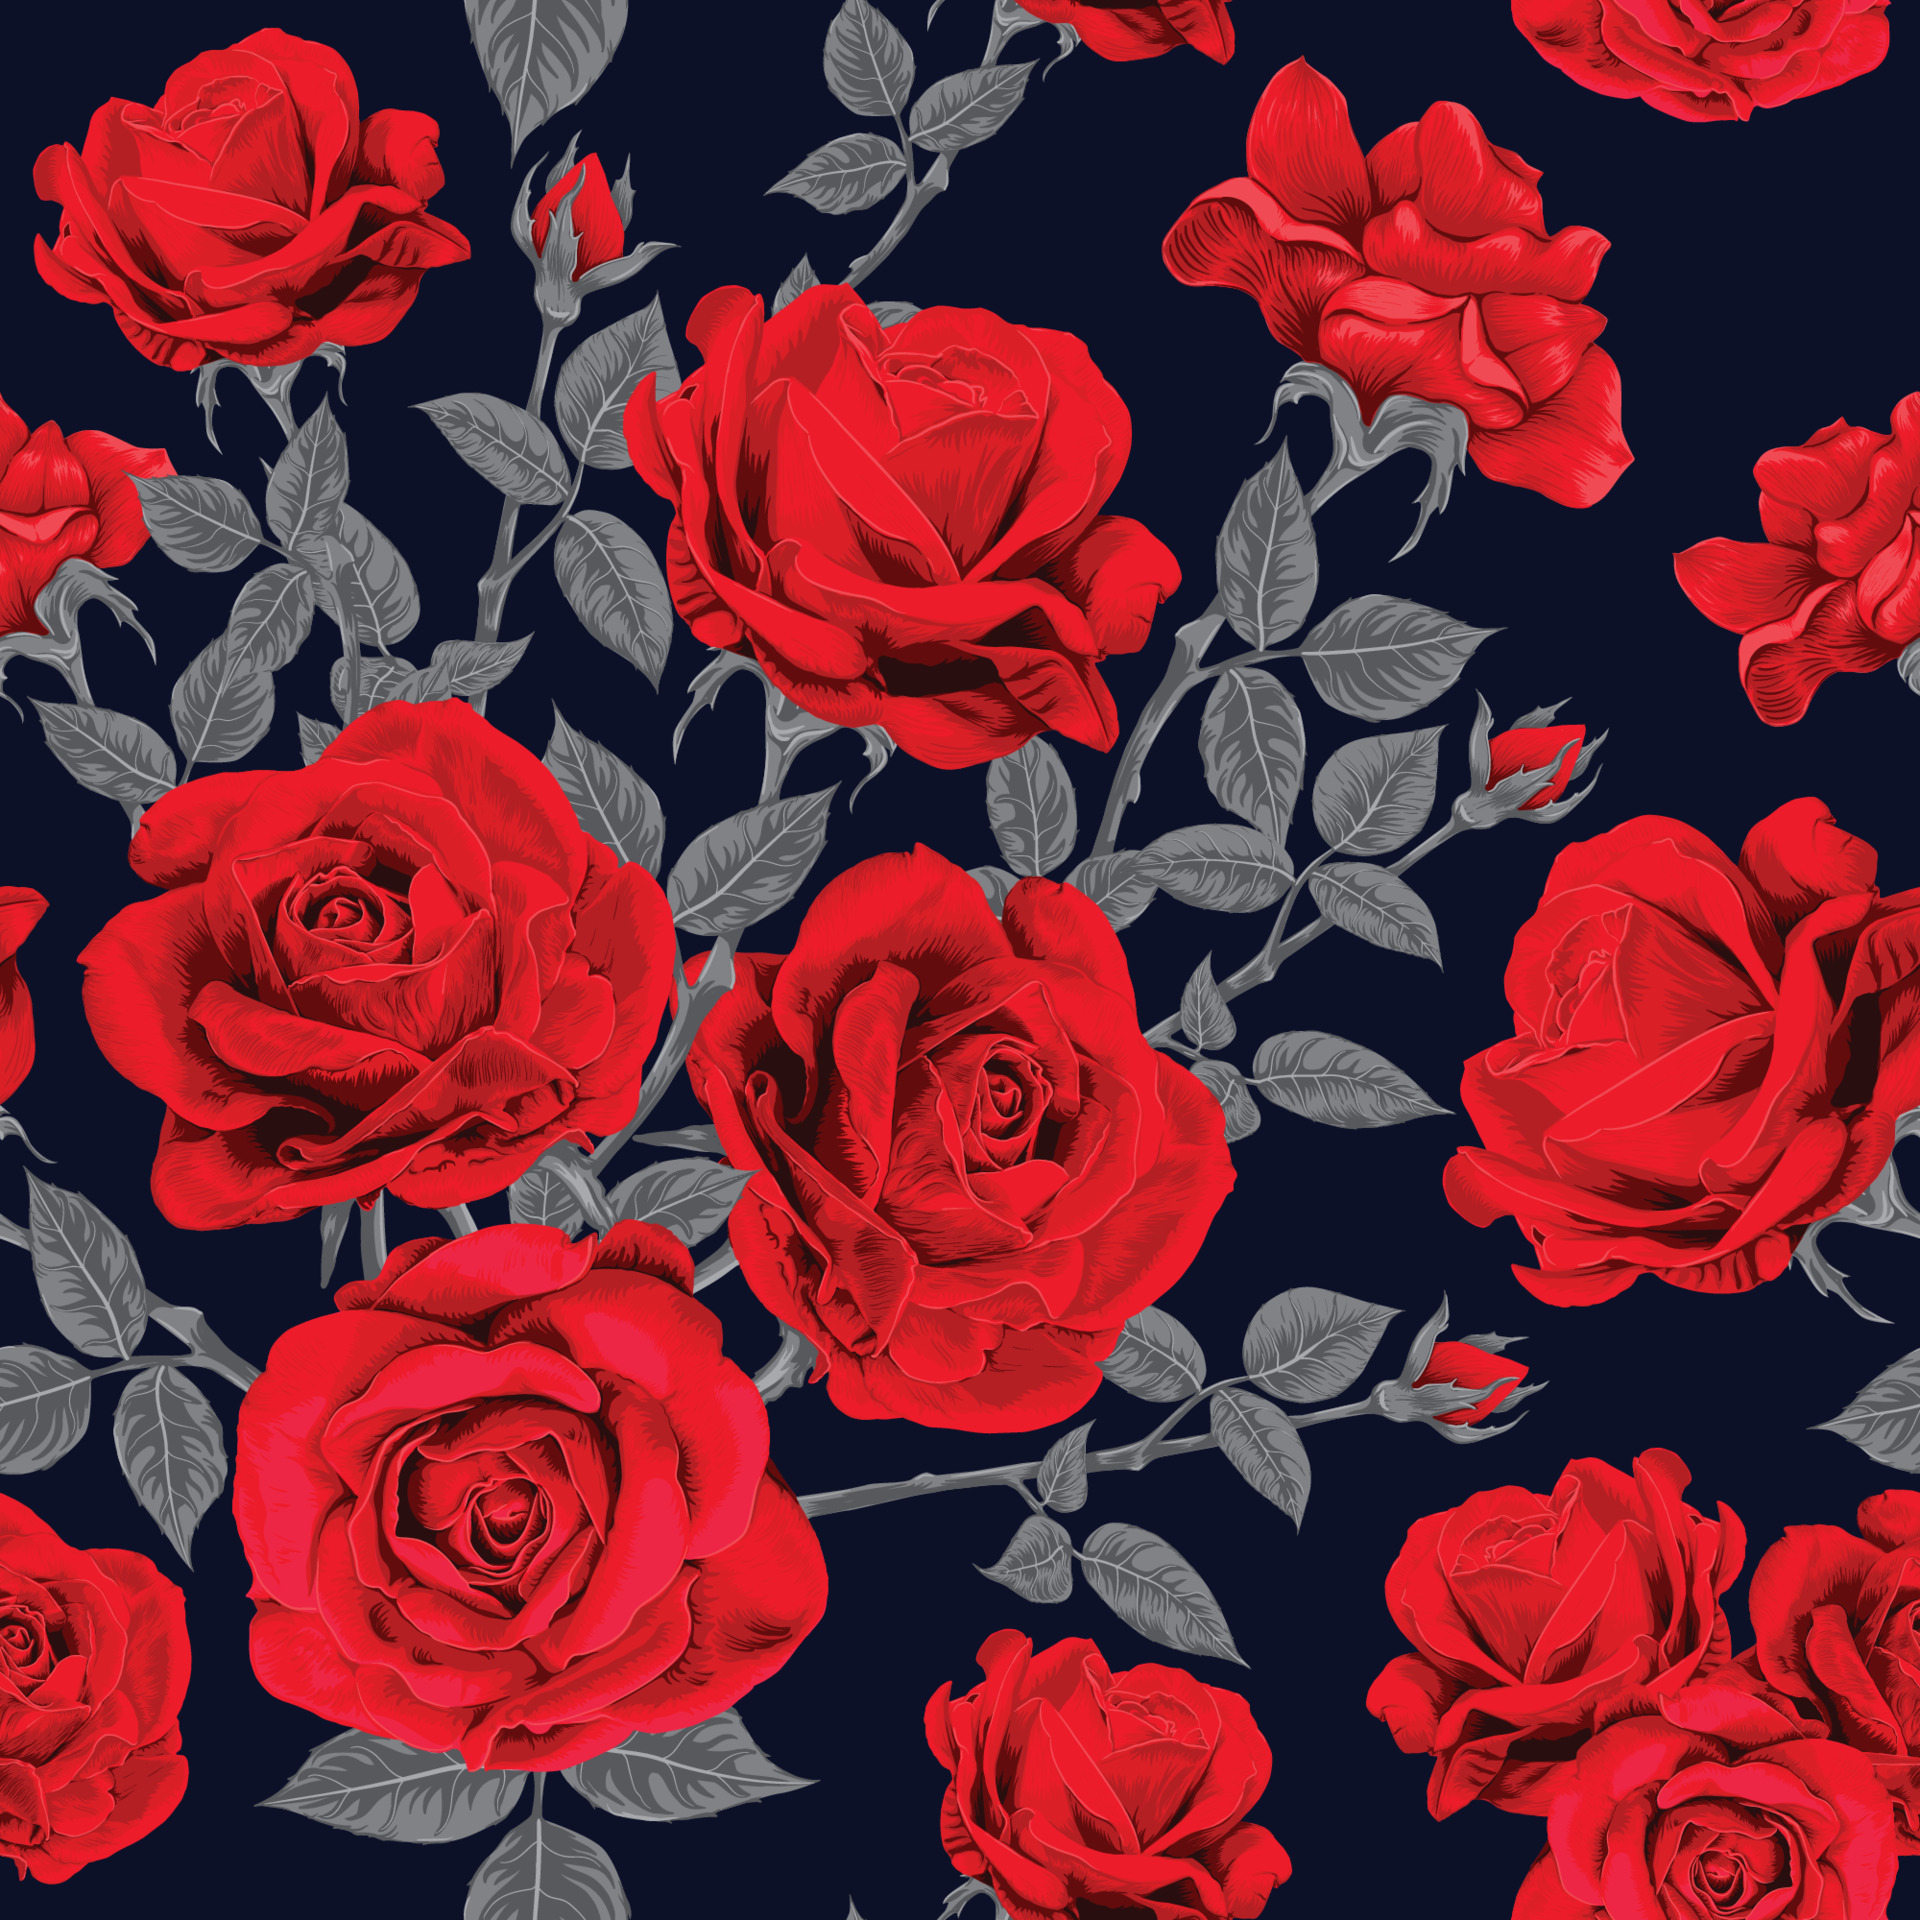 Tinh tế và trang nhã, hoa hồng đỏ trên nền xanh đậm hoa văn trừu tượng sẽ làm nổi bật trang trí không gian của bạn. Bất kể bạn sử dụng làm hình nền cho điện thoại hay máy tính, chúng đem đến một cái nhìn mới lạ và đẹp mắt.